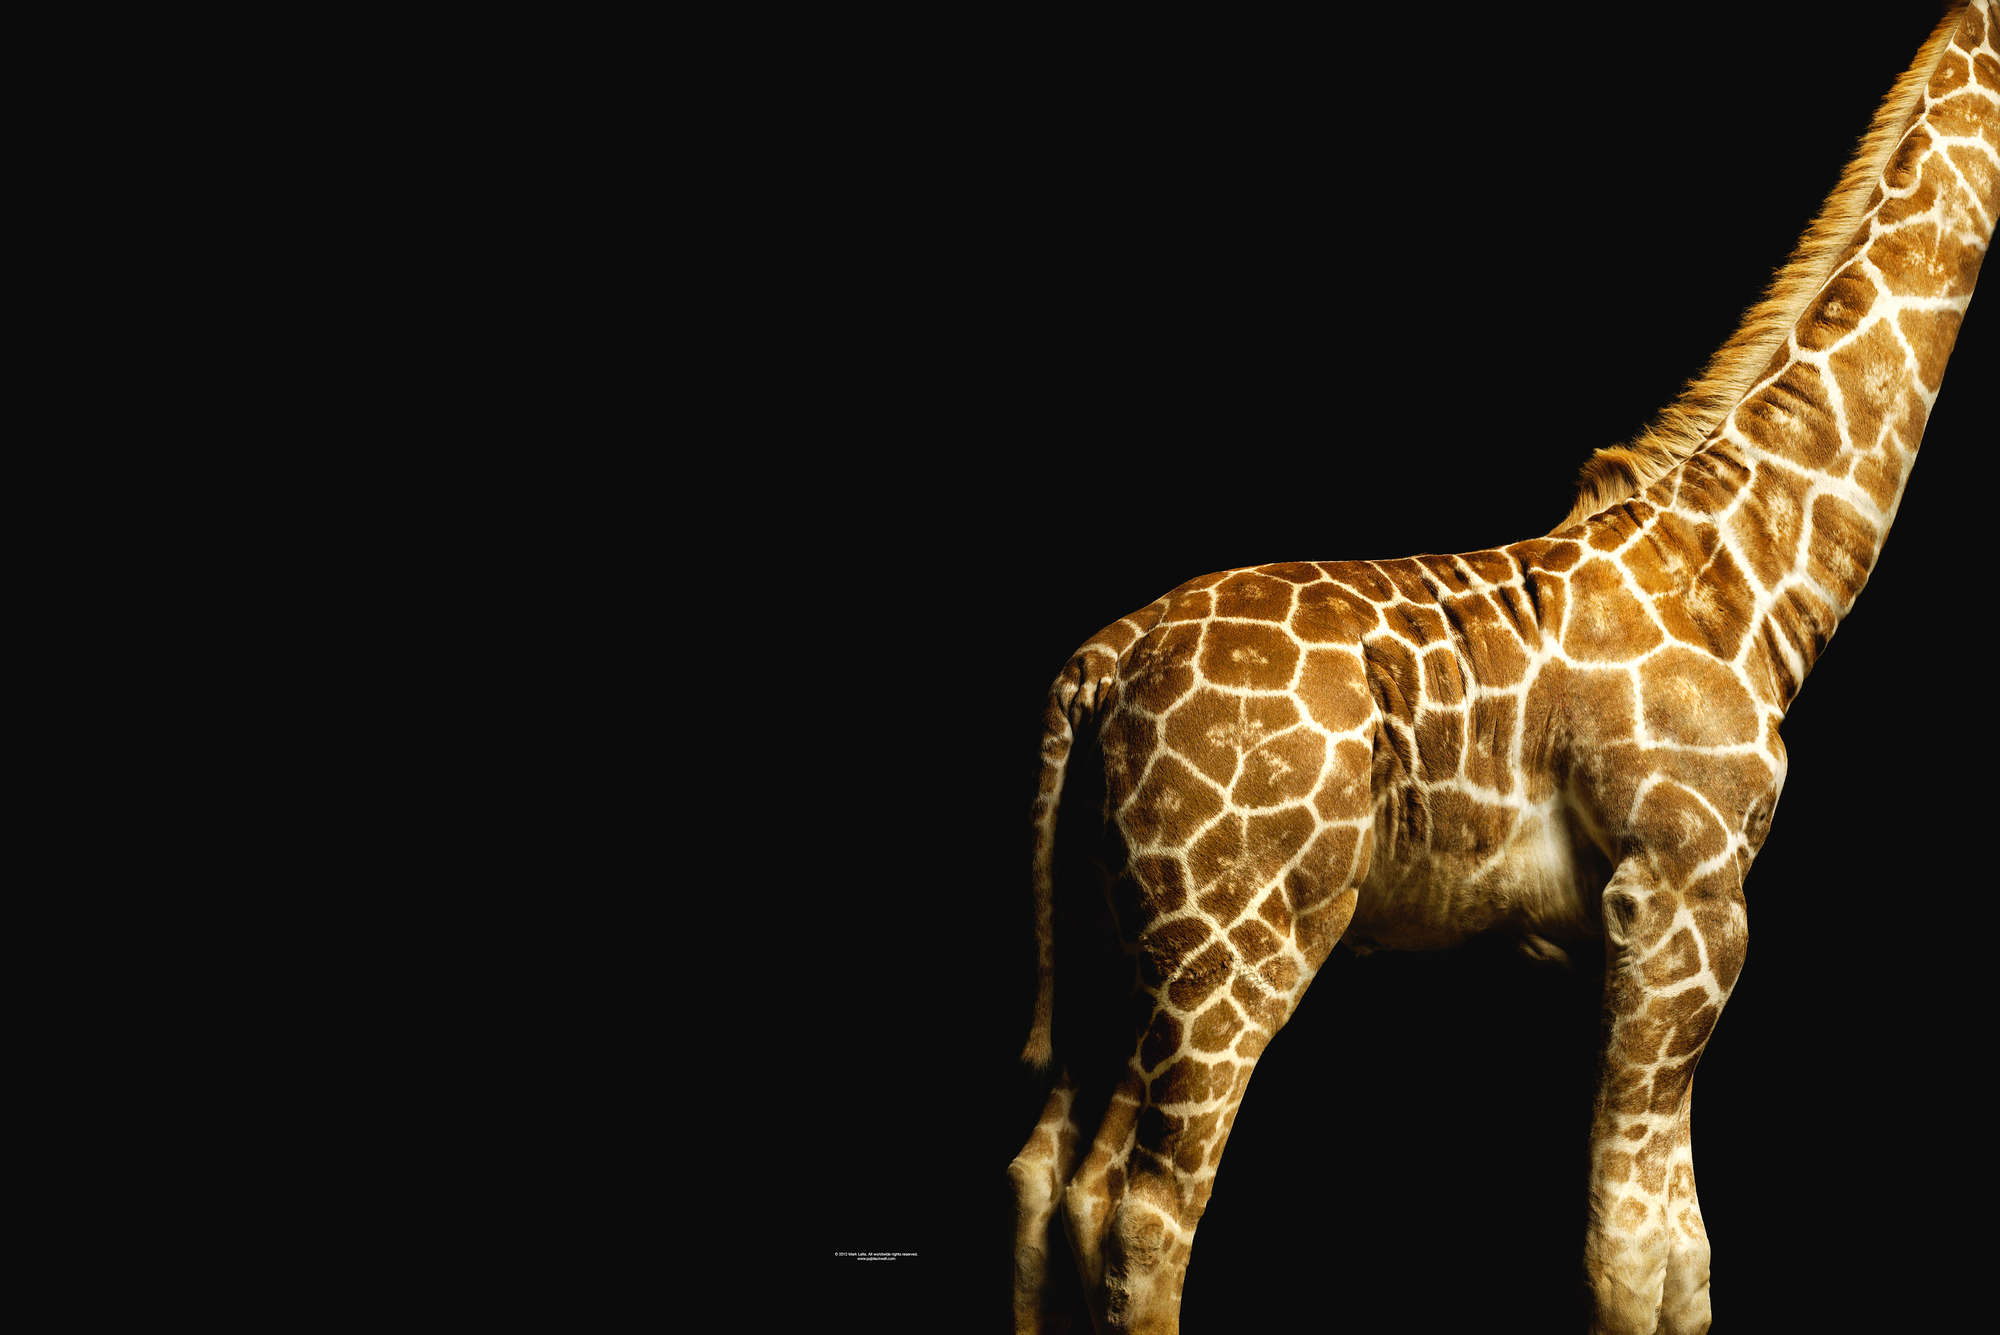             Corps de girafe - papier peint avec portrait d'animal
        